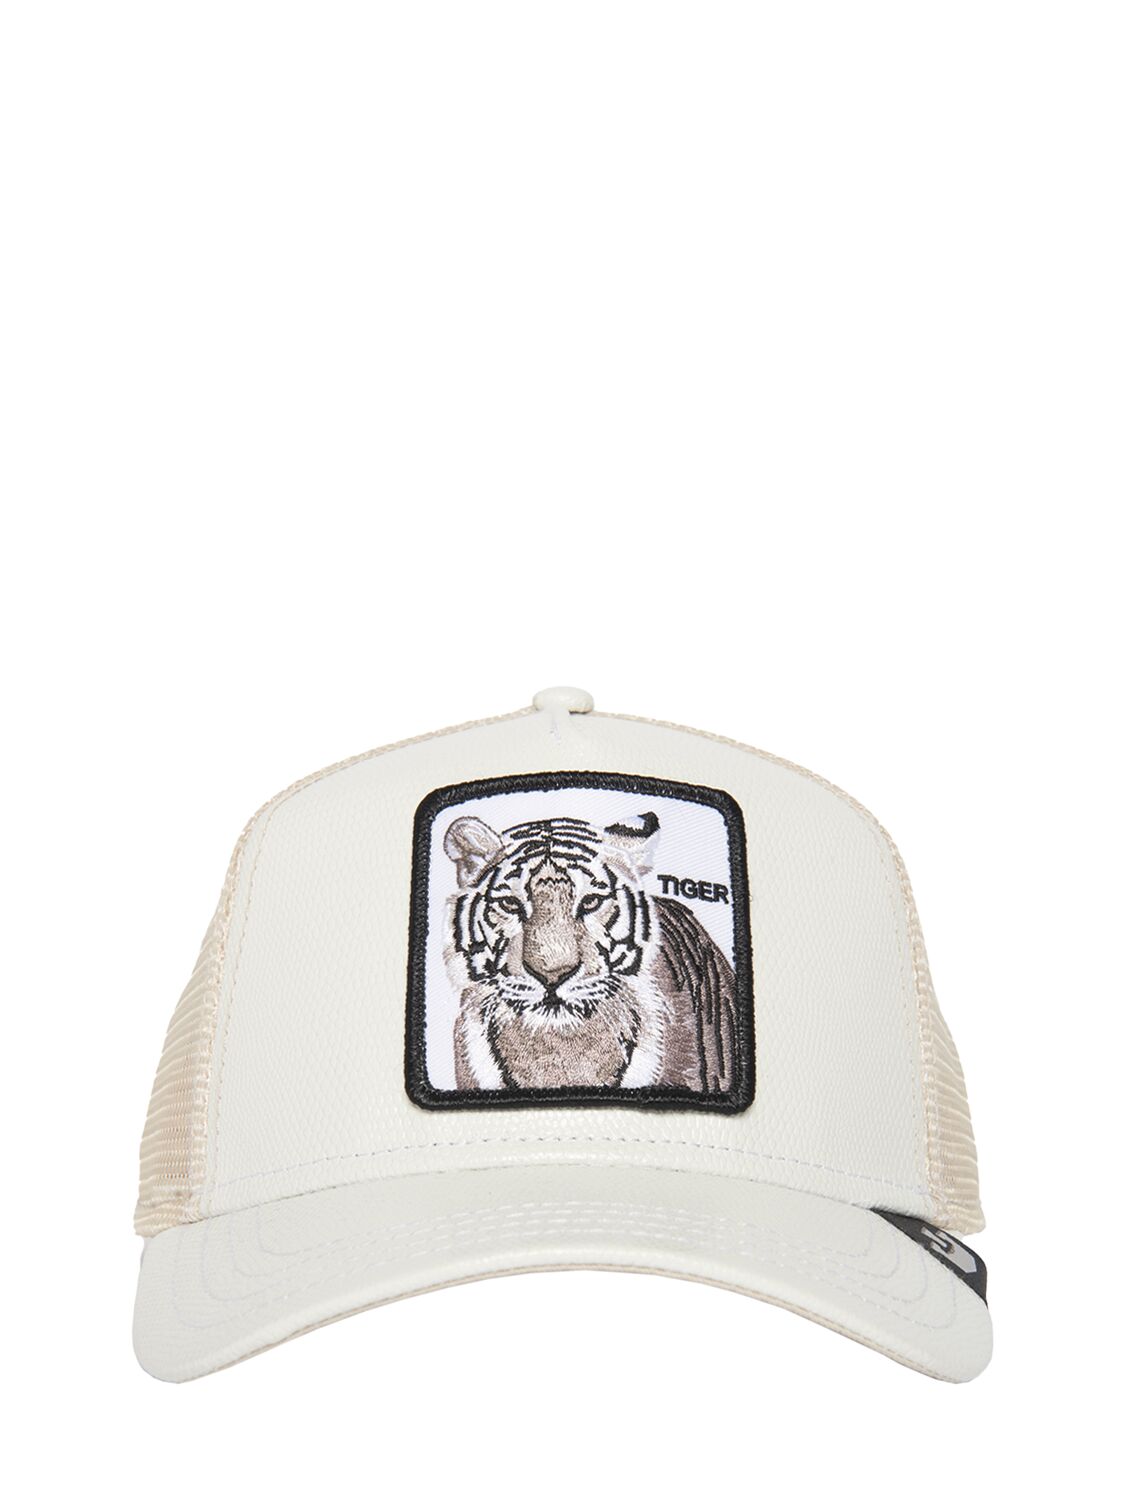 The Killer Tiger Trucker Hat